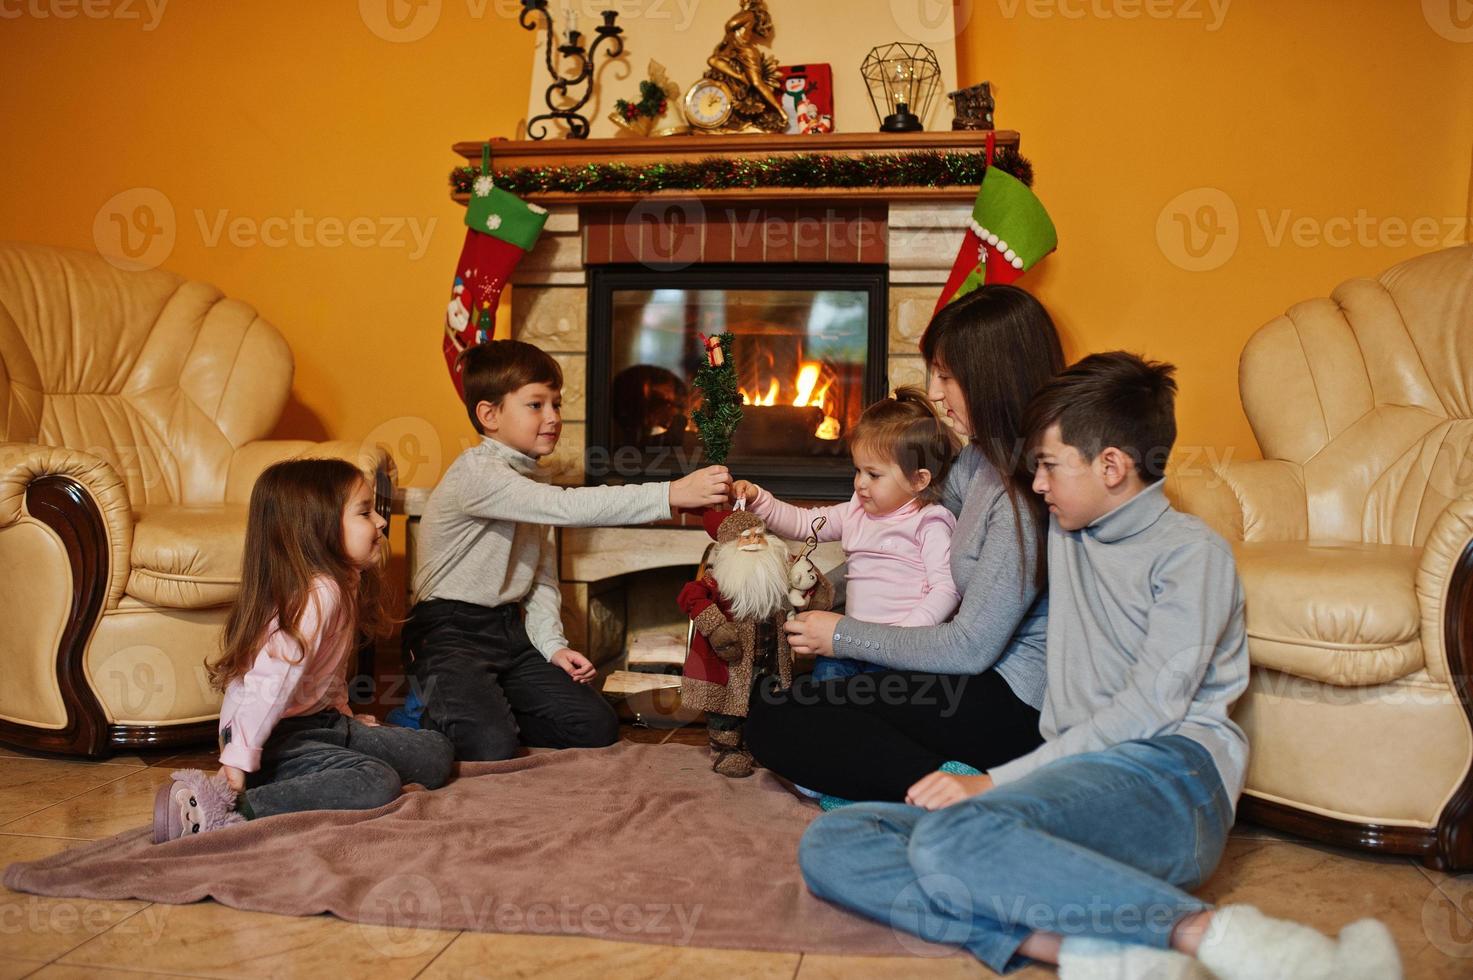 feliz jovem grande família por uma lareira na sala de estar quente em dia de inverno. mãe com quatro filhos em casa. foto